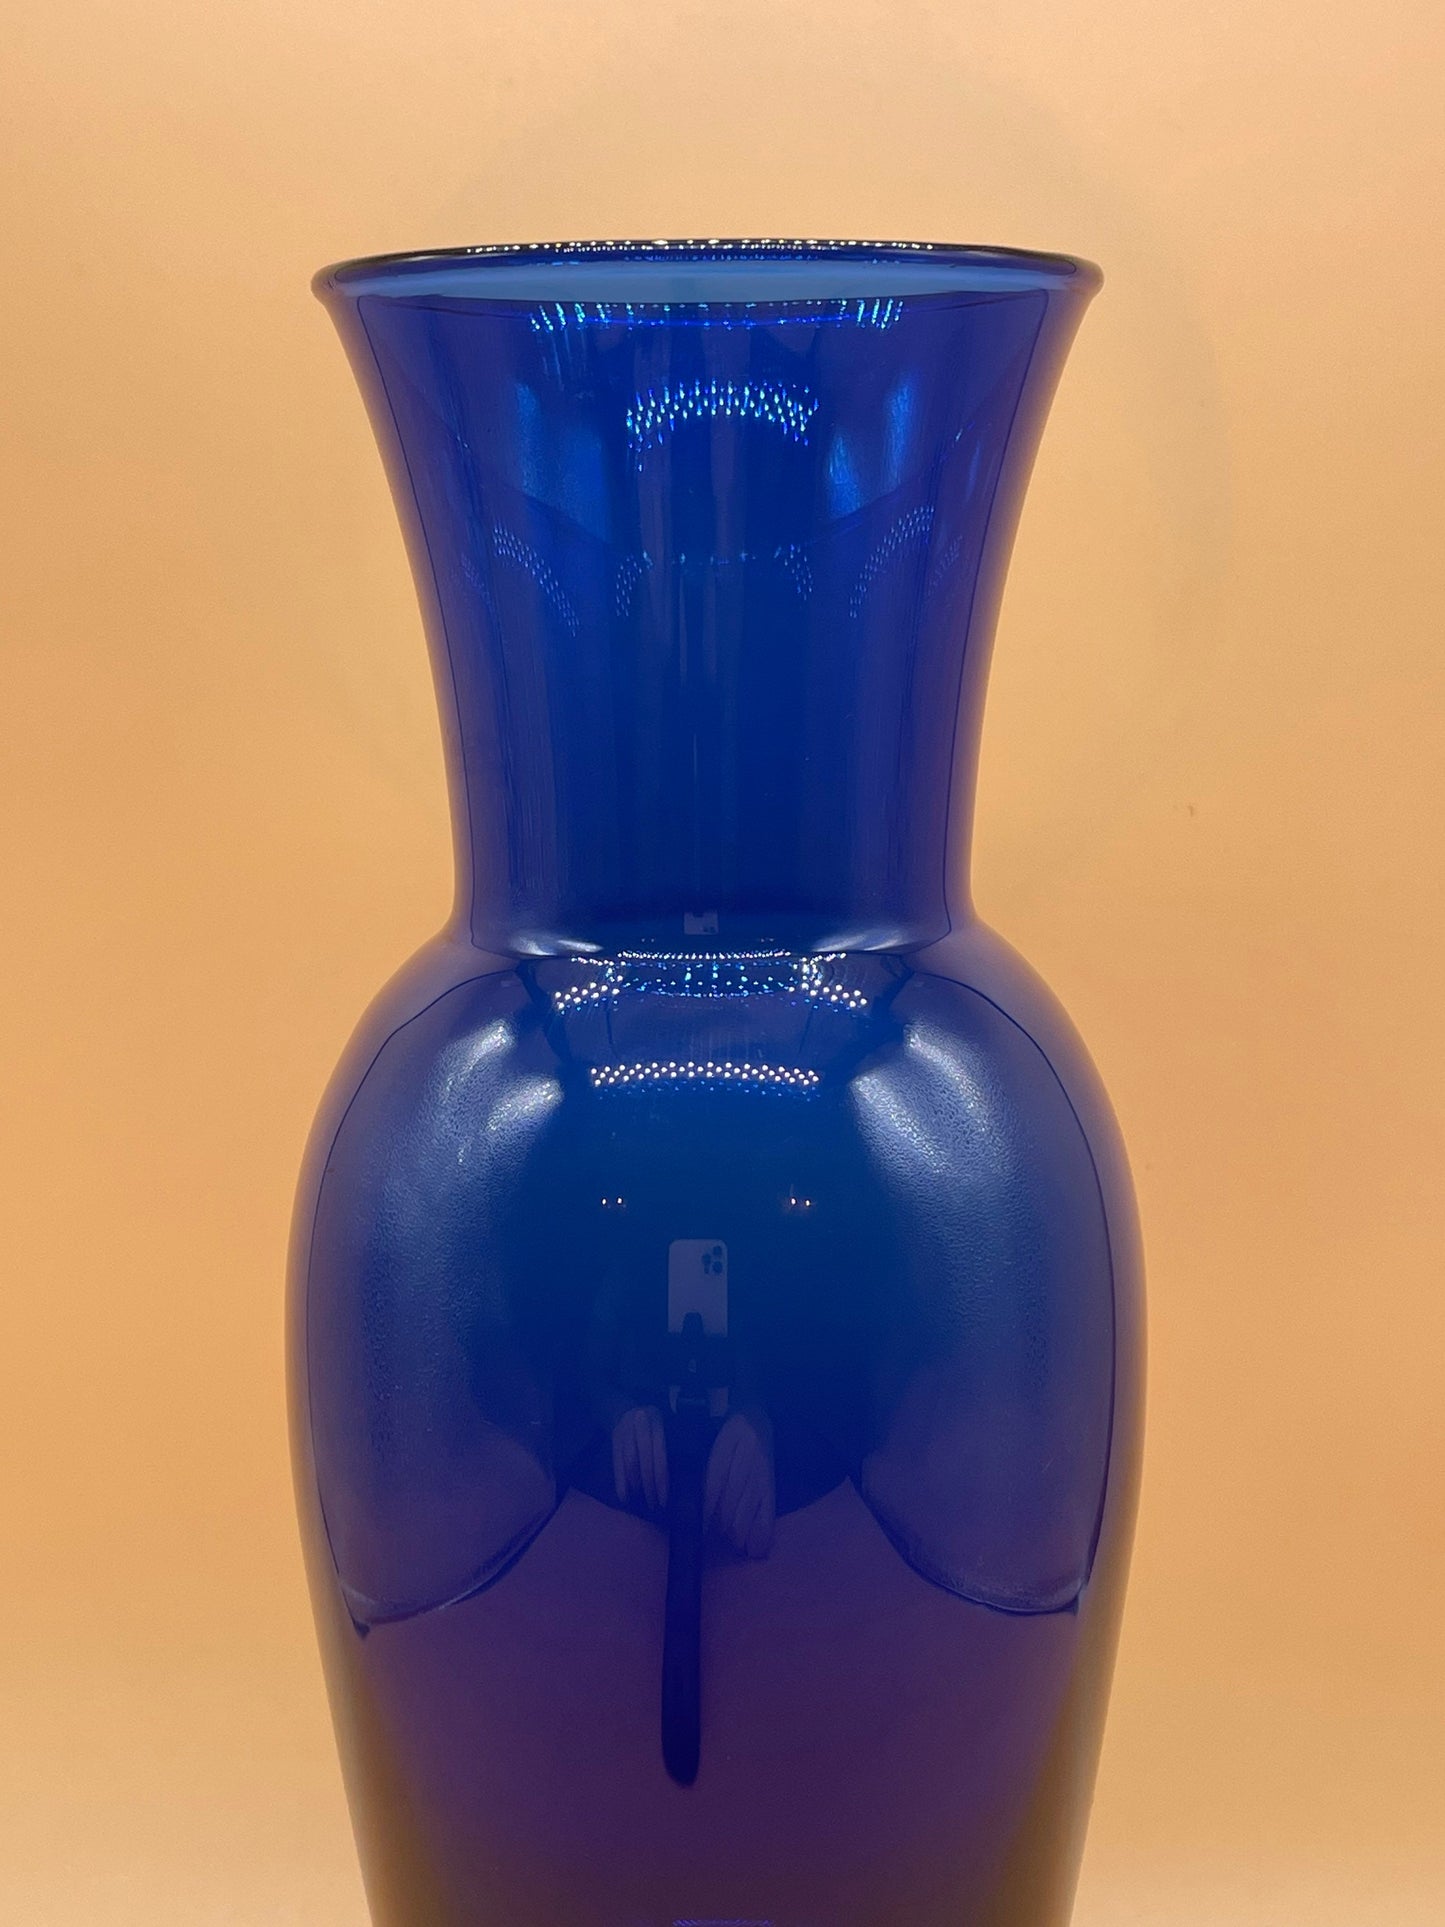 Vintage Royal Copenhagen Cobalt Blue Vase with Light Blue Base